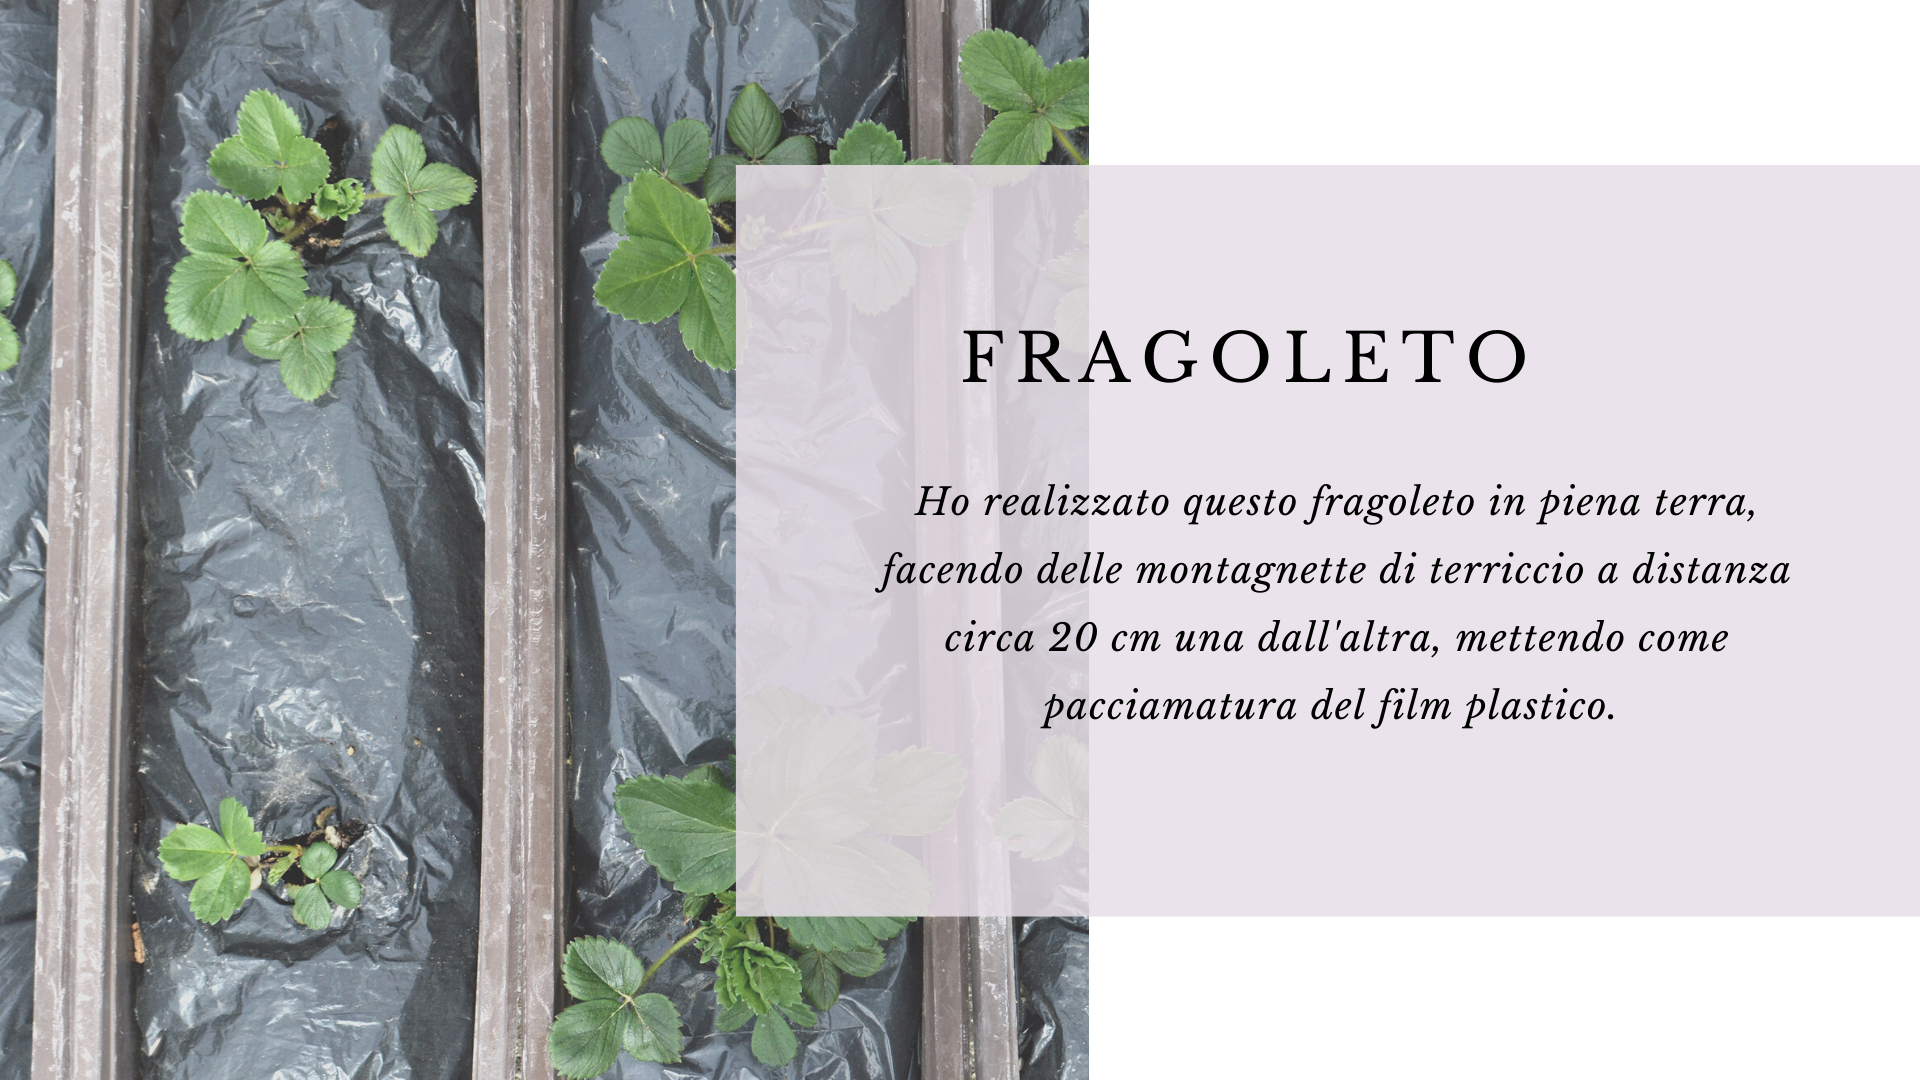 Fragoleto